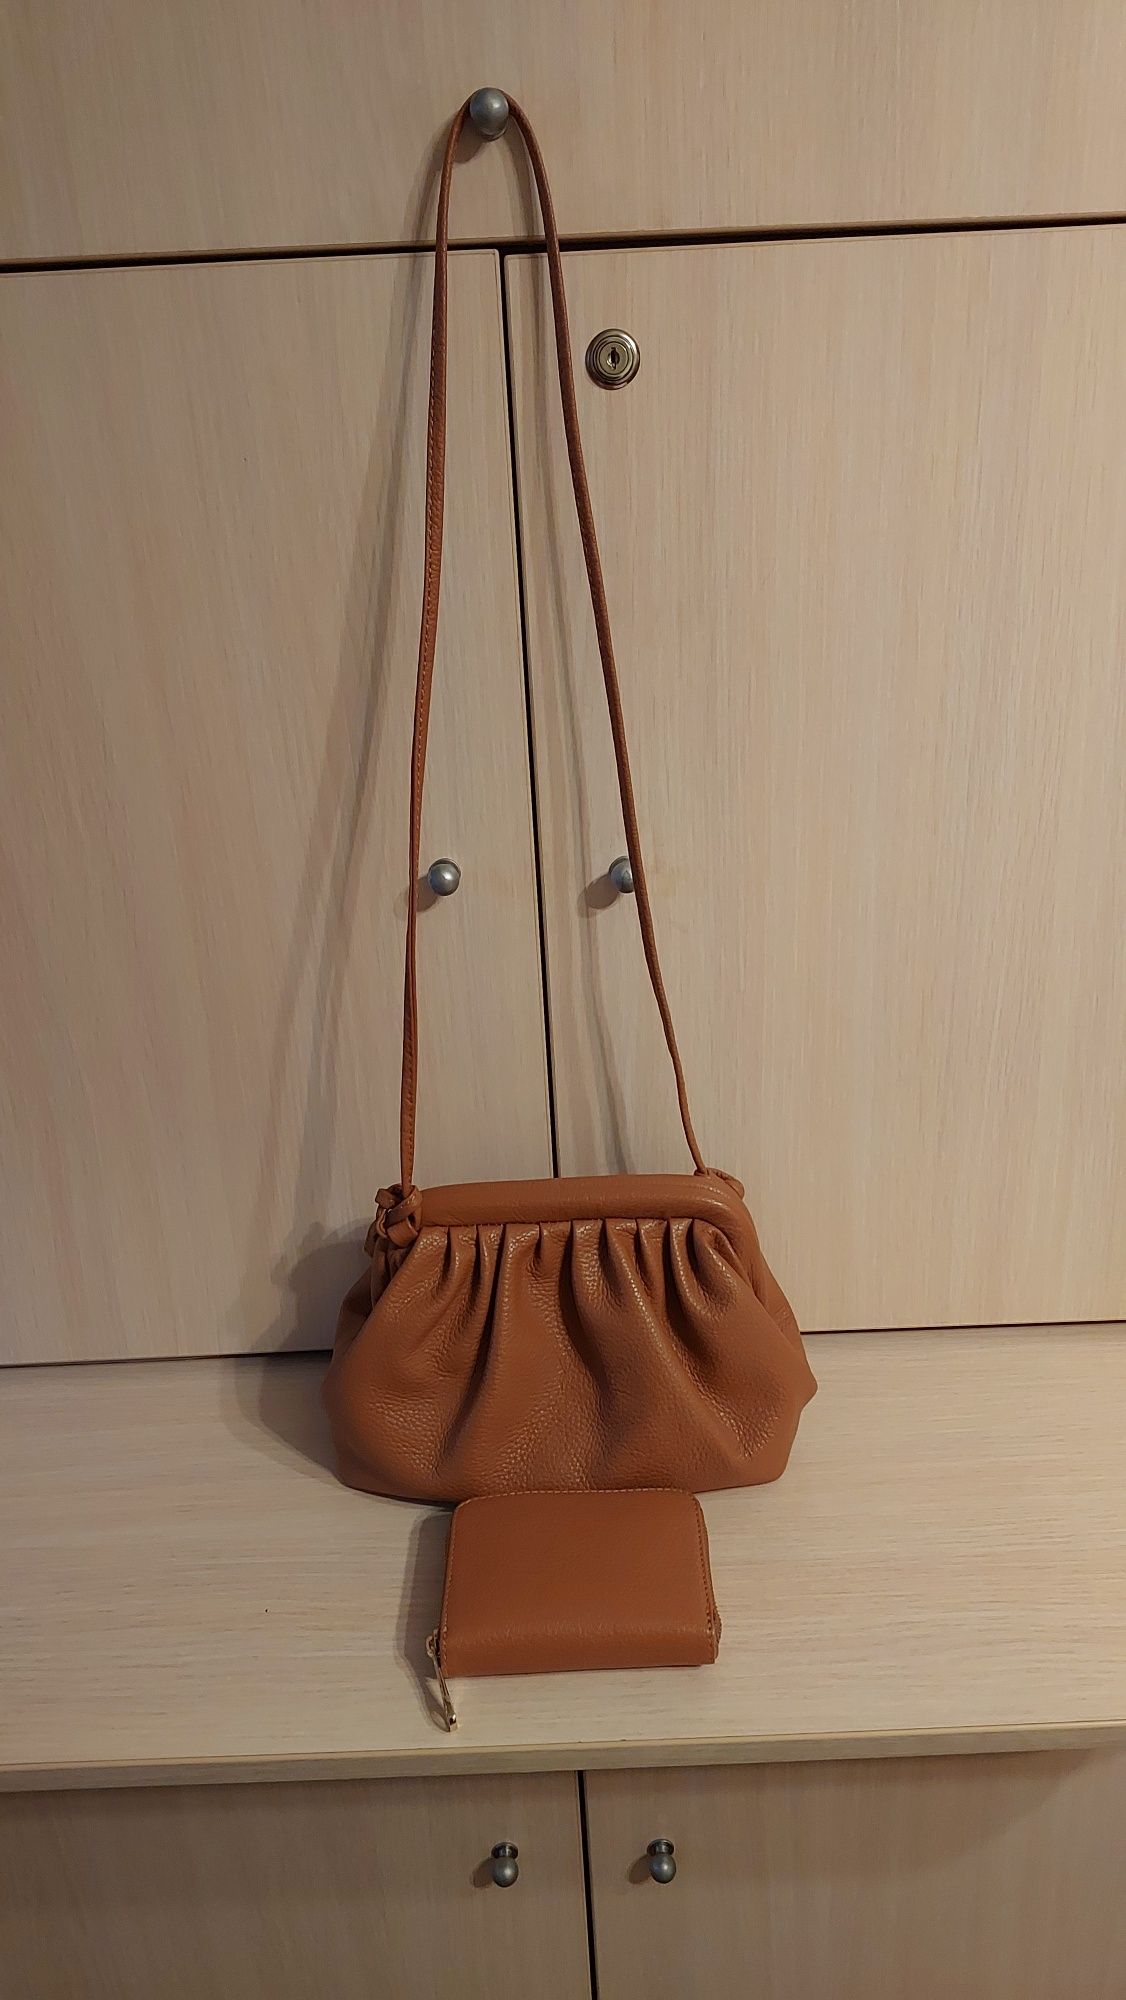 Продам коричневую кожаную итальянскую сумку с кошельком